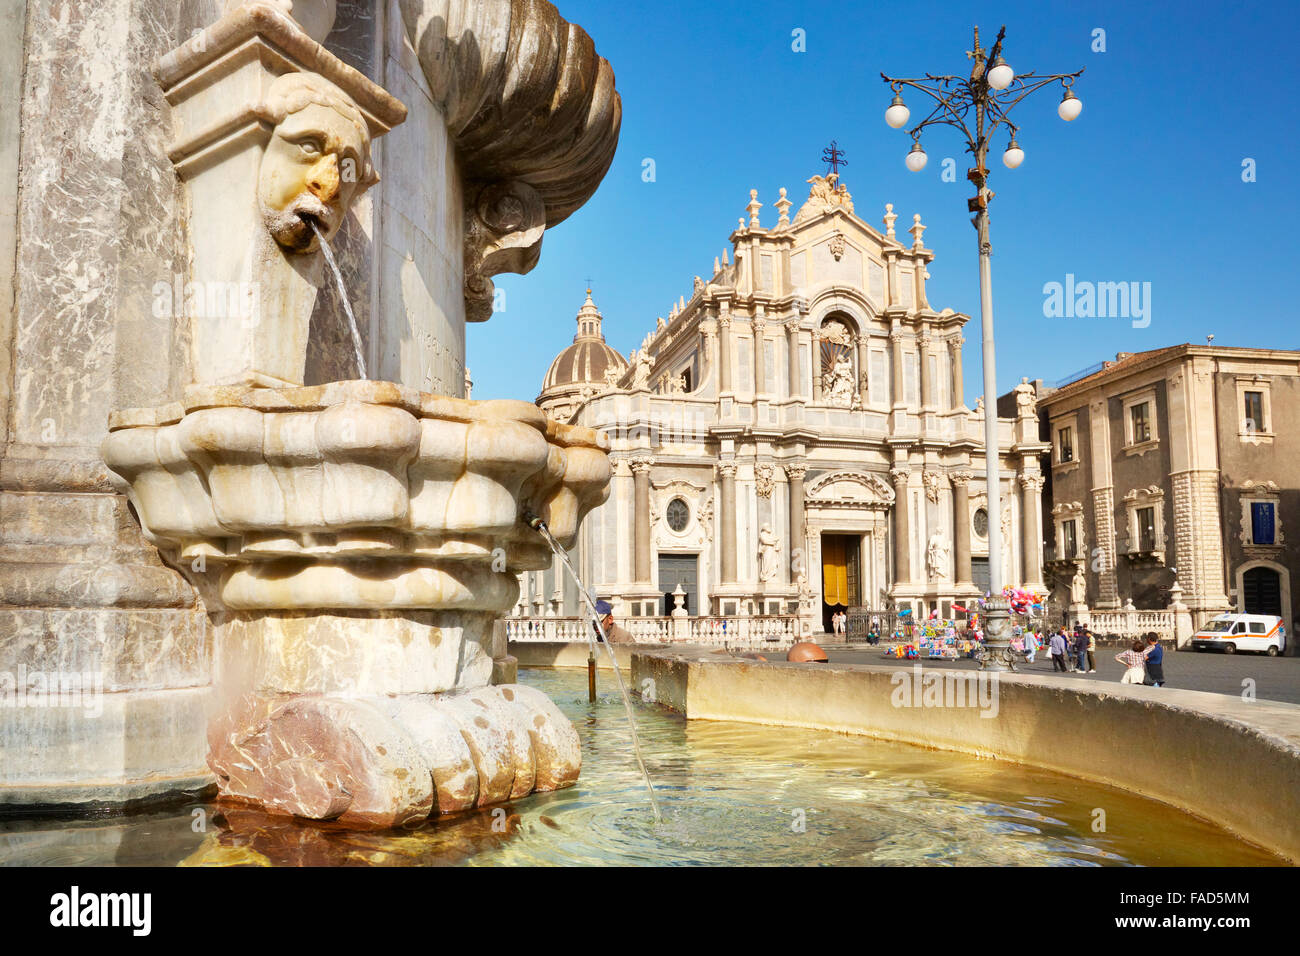 Catania - Fontana dell'elefante e Cattedrale di Sant'Agata, Sicilia, Italia Foto Stock